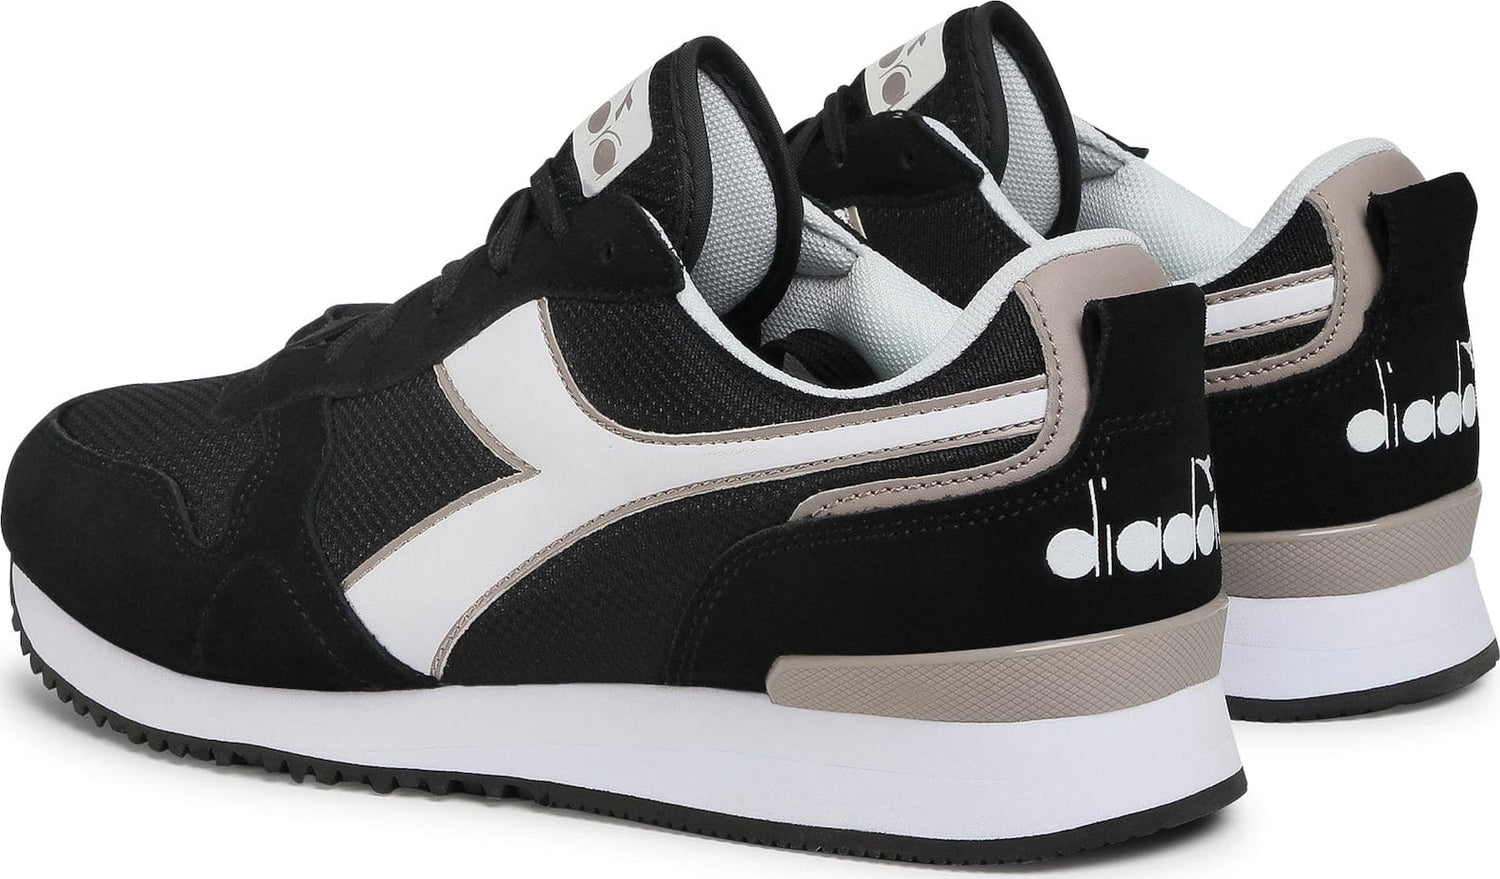 Diadora sneakers olympia - La Scarpa Shoes